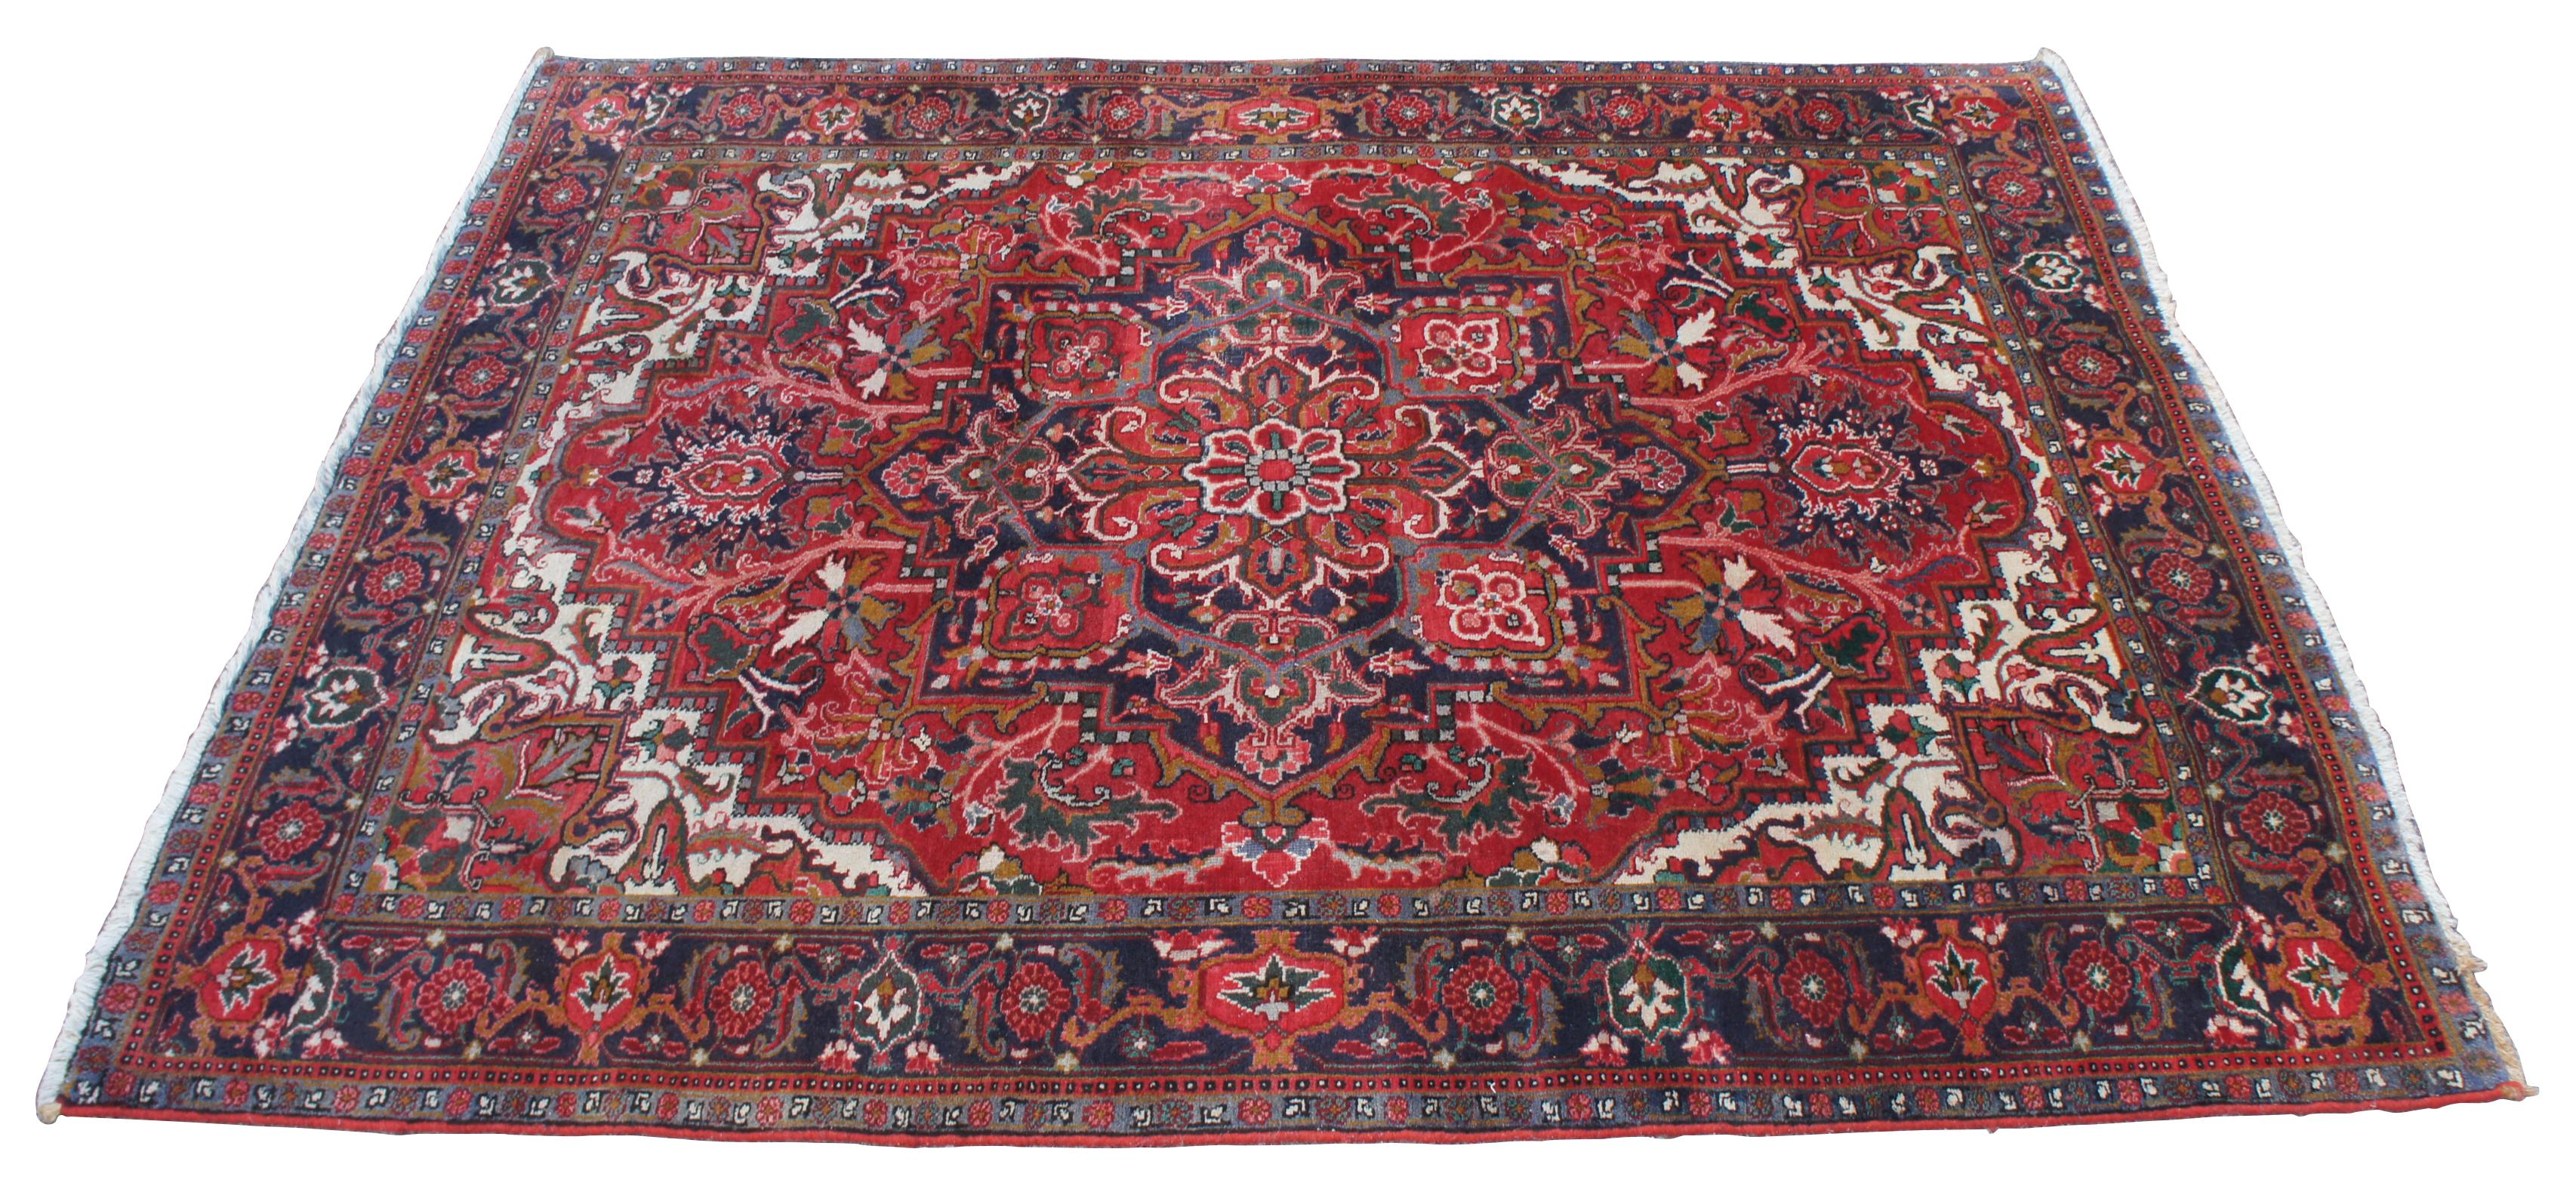 Vintage By 1985, tapis Bakhtiar. Fabriqué en Iran en 100% laine, il présente un grand médaillon central avec un motif floral sur un champ de rouges avec des bleus / sarcelles, des tans, des roses, des verts, des bruns / or, et des indigo / violet.